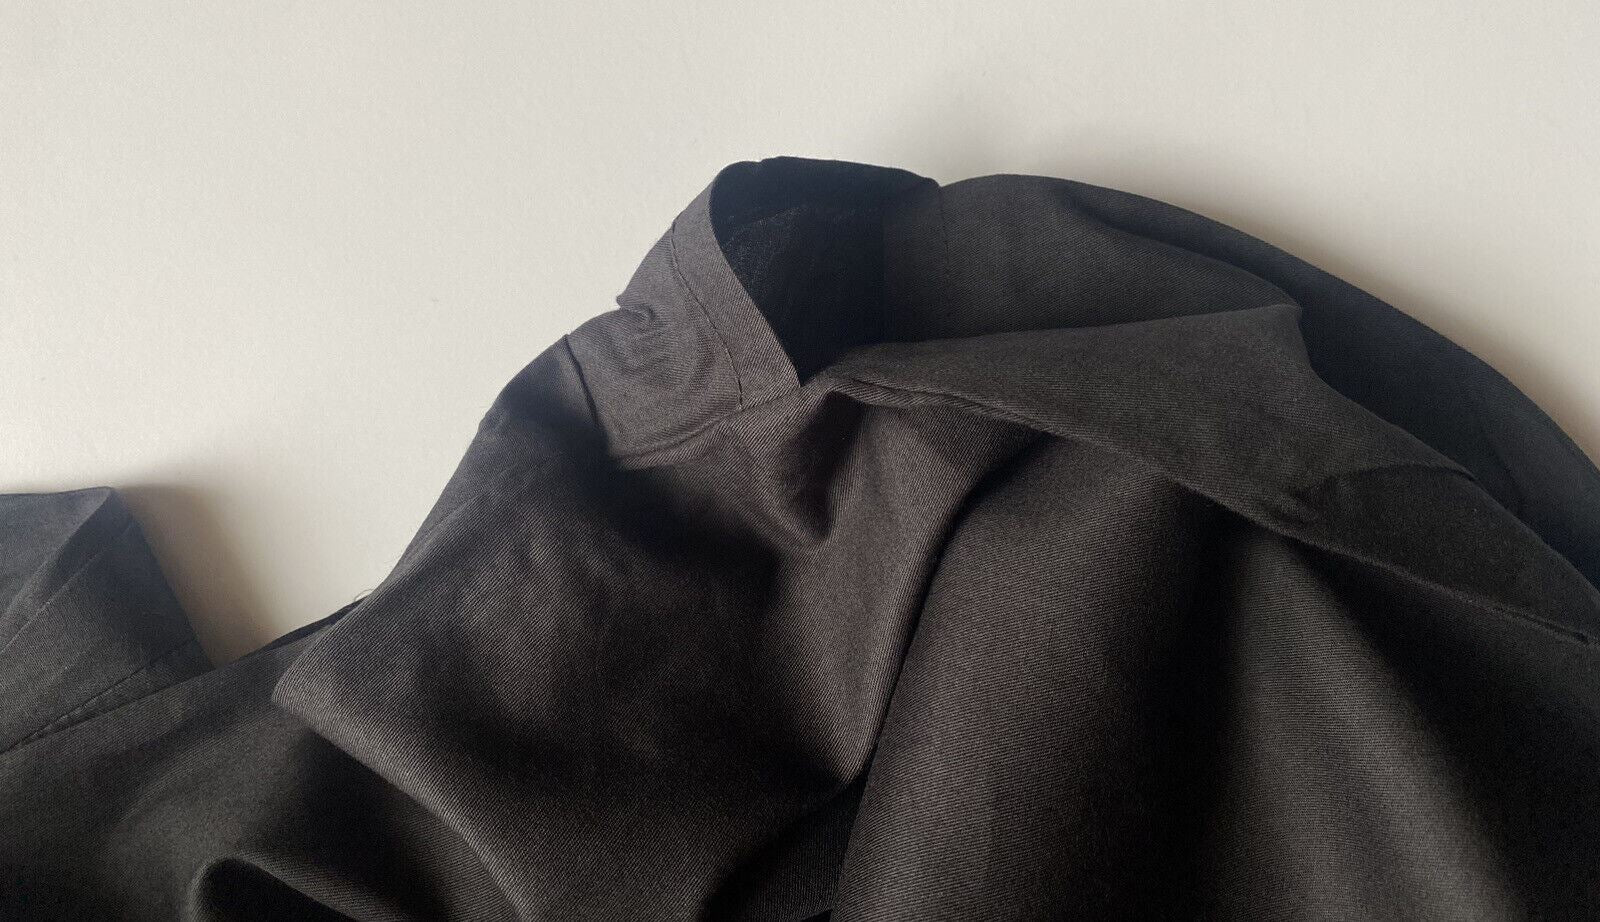 Neuer Gucci-Kleidersack aus Baumwolle für Mantel/Suite/Kleid, Schwarz, 54,5" L x 33,5" B 